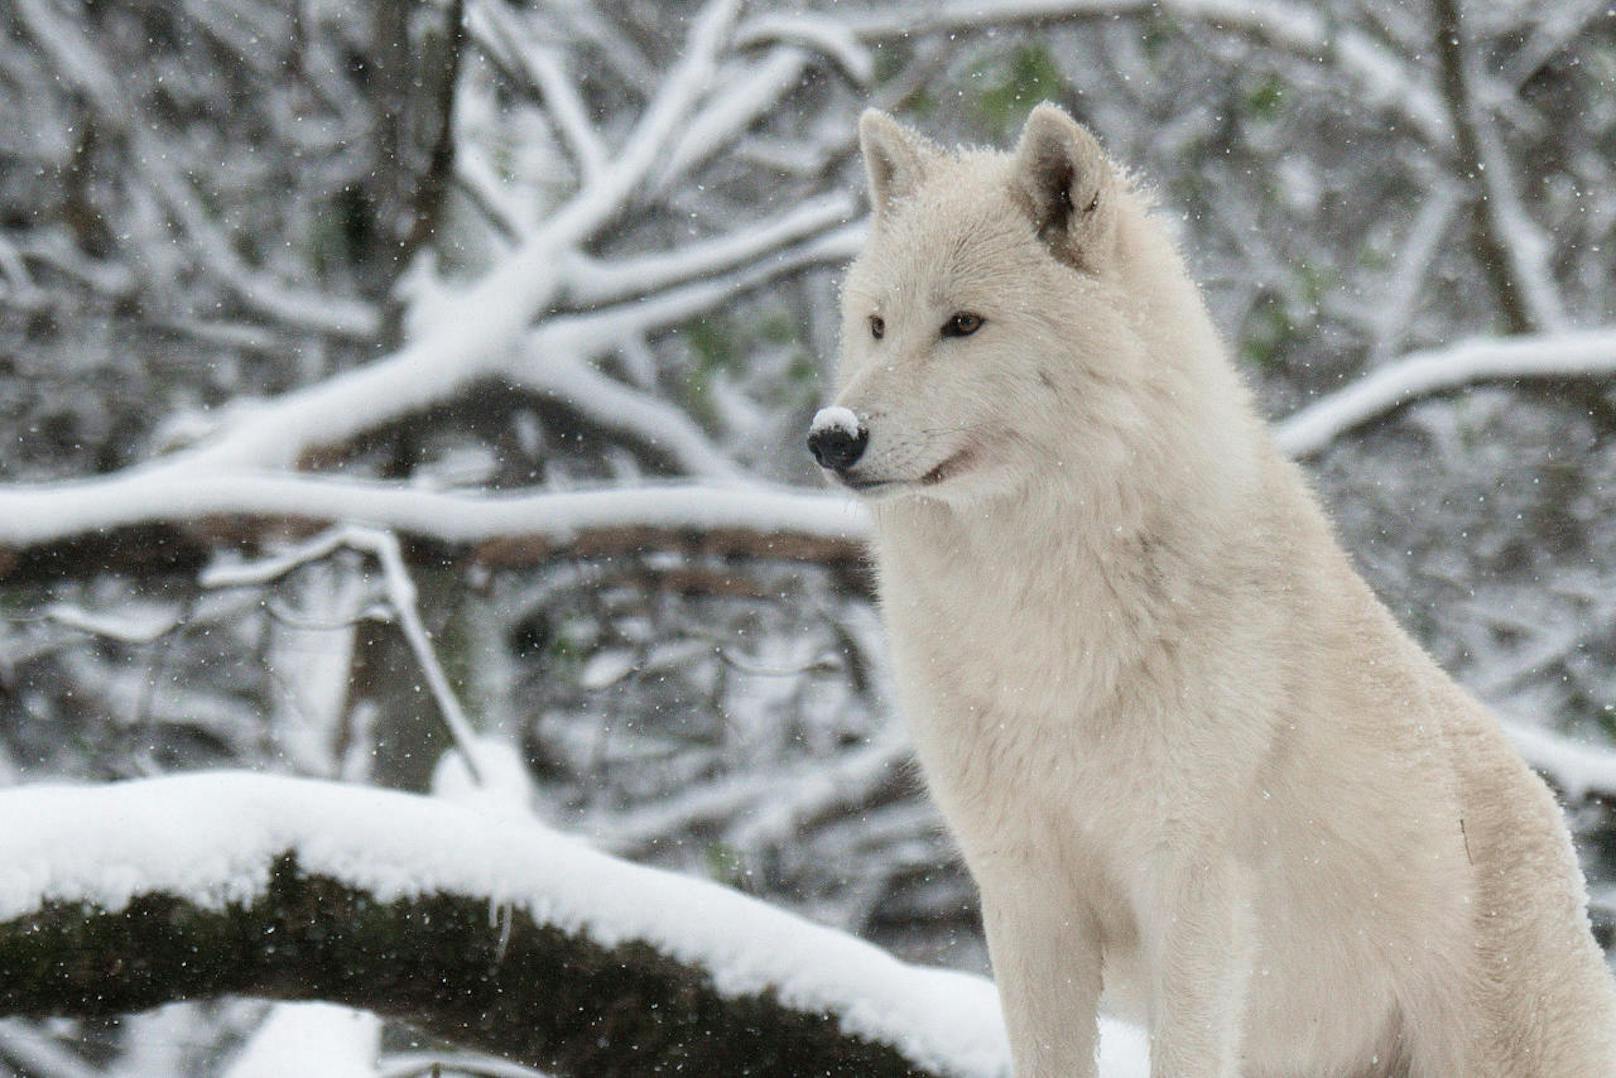 Um die arktischen Wölfe mit ihrem weißen Winterfell im Schnee zu finden, muss man genau hinschauen. (c) Jutta Kirchner